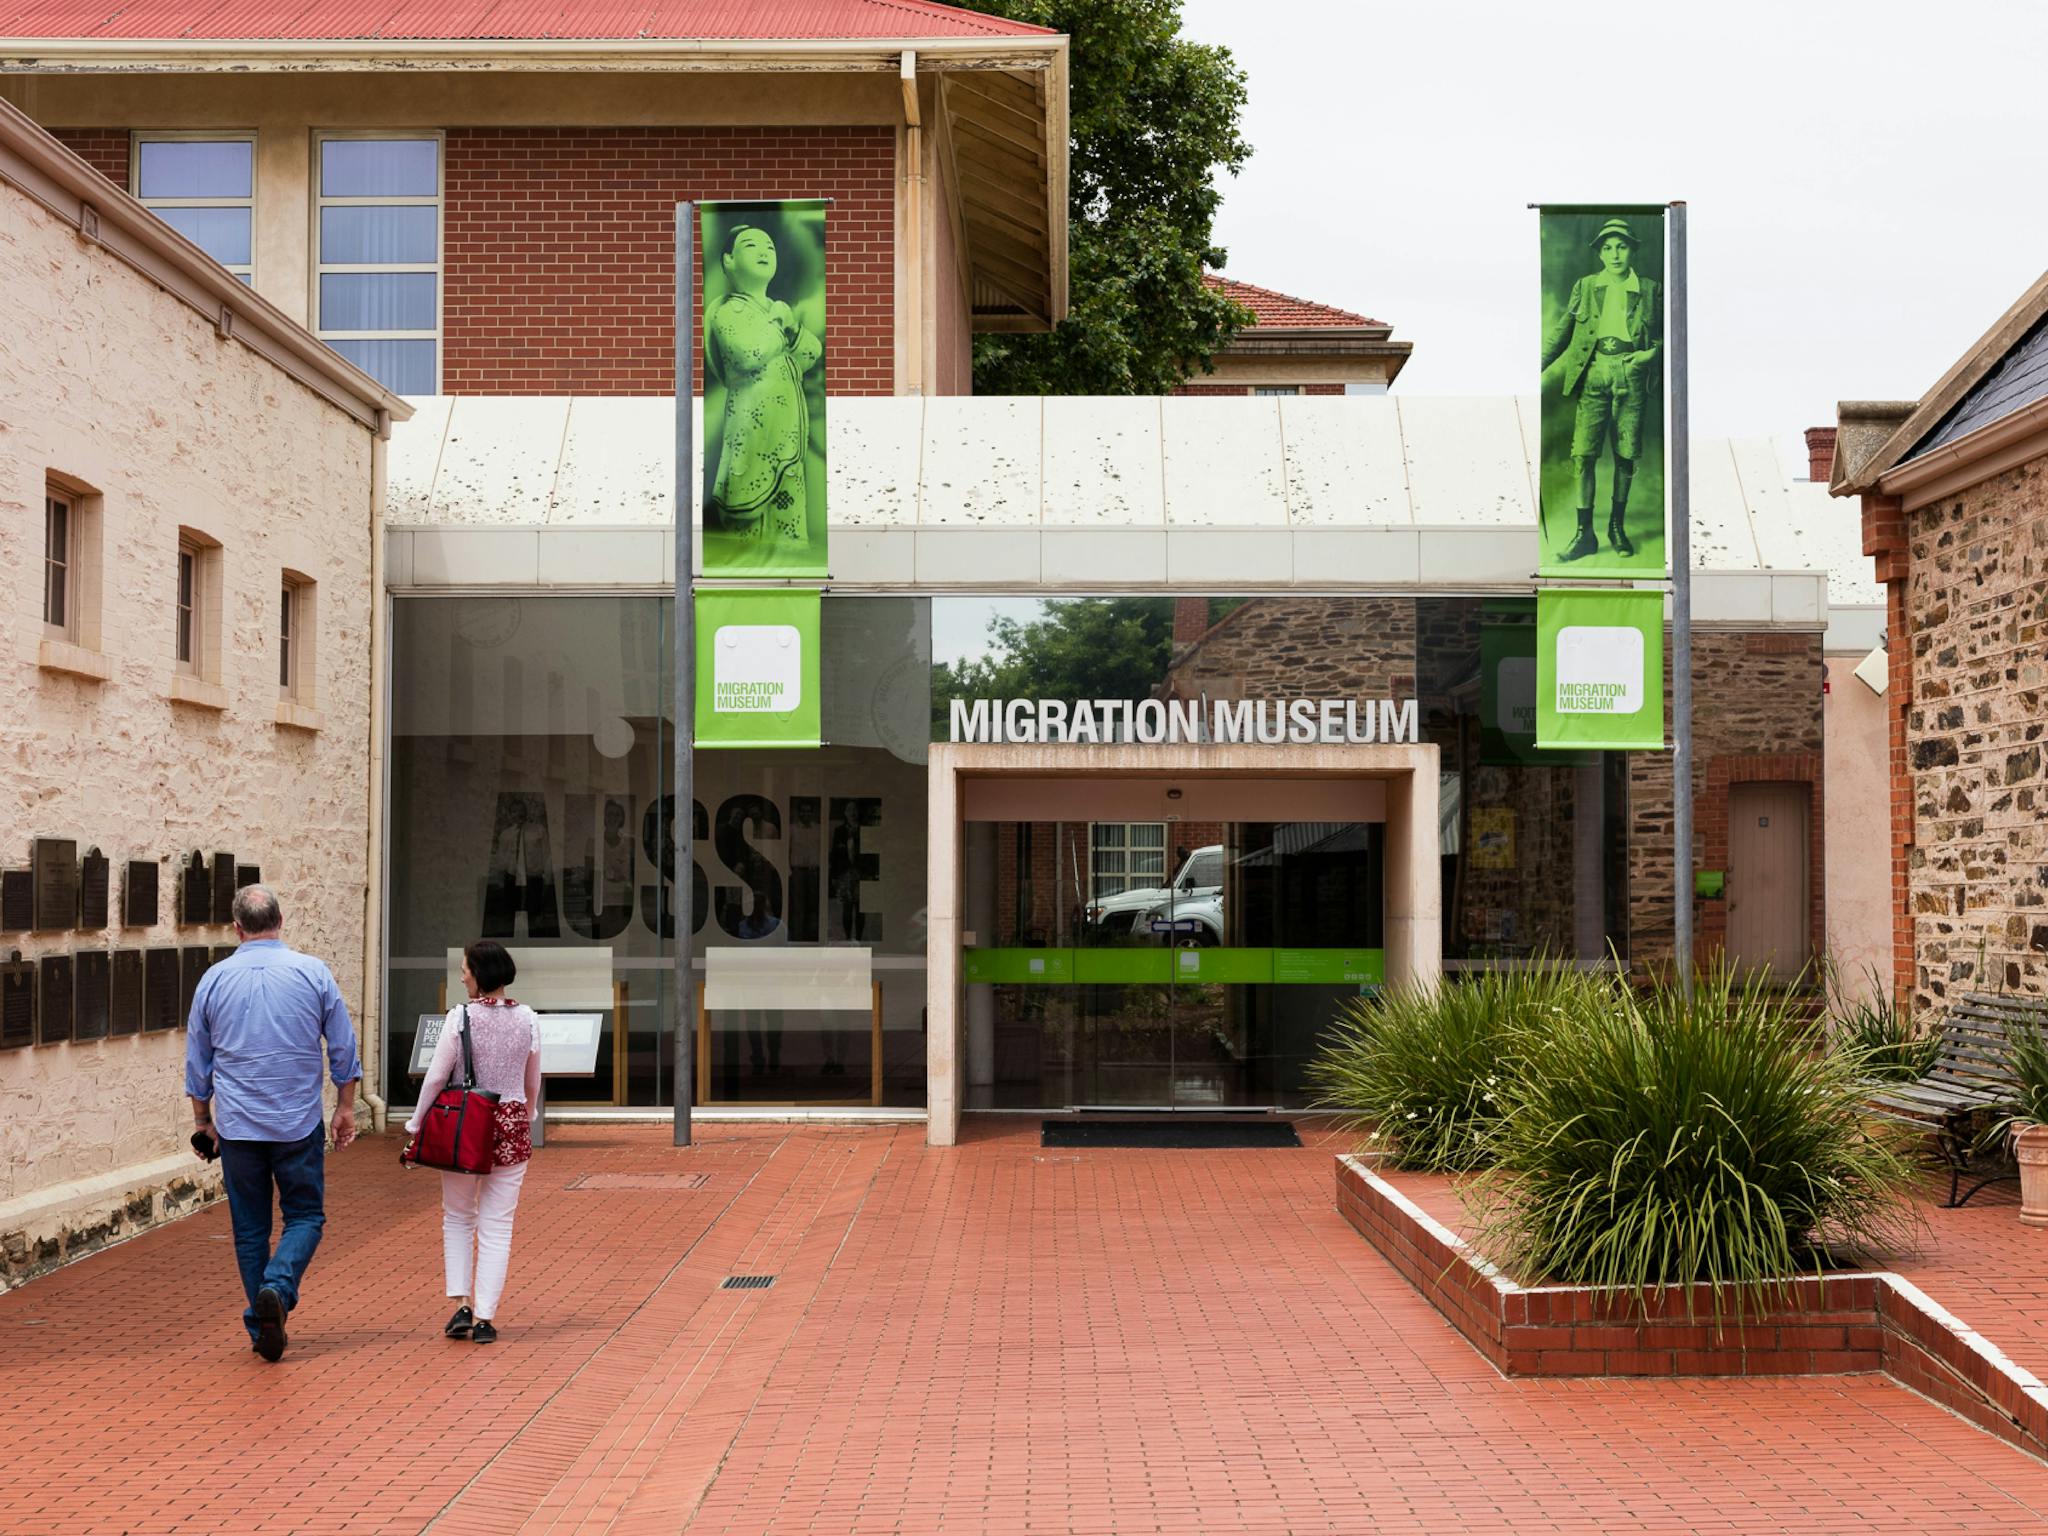 Migration Museum Slider Image 1